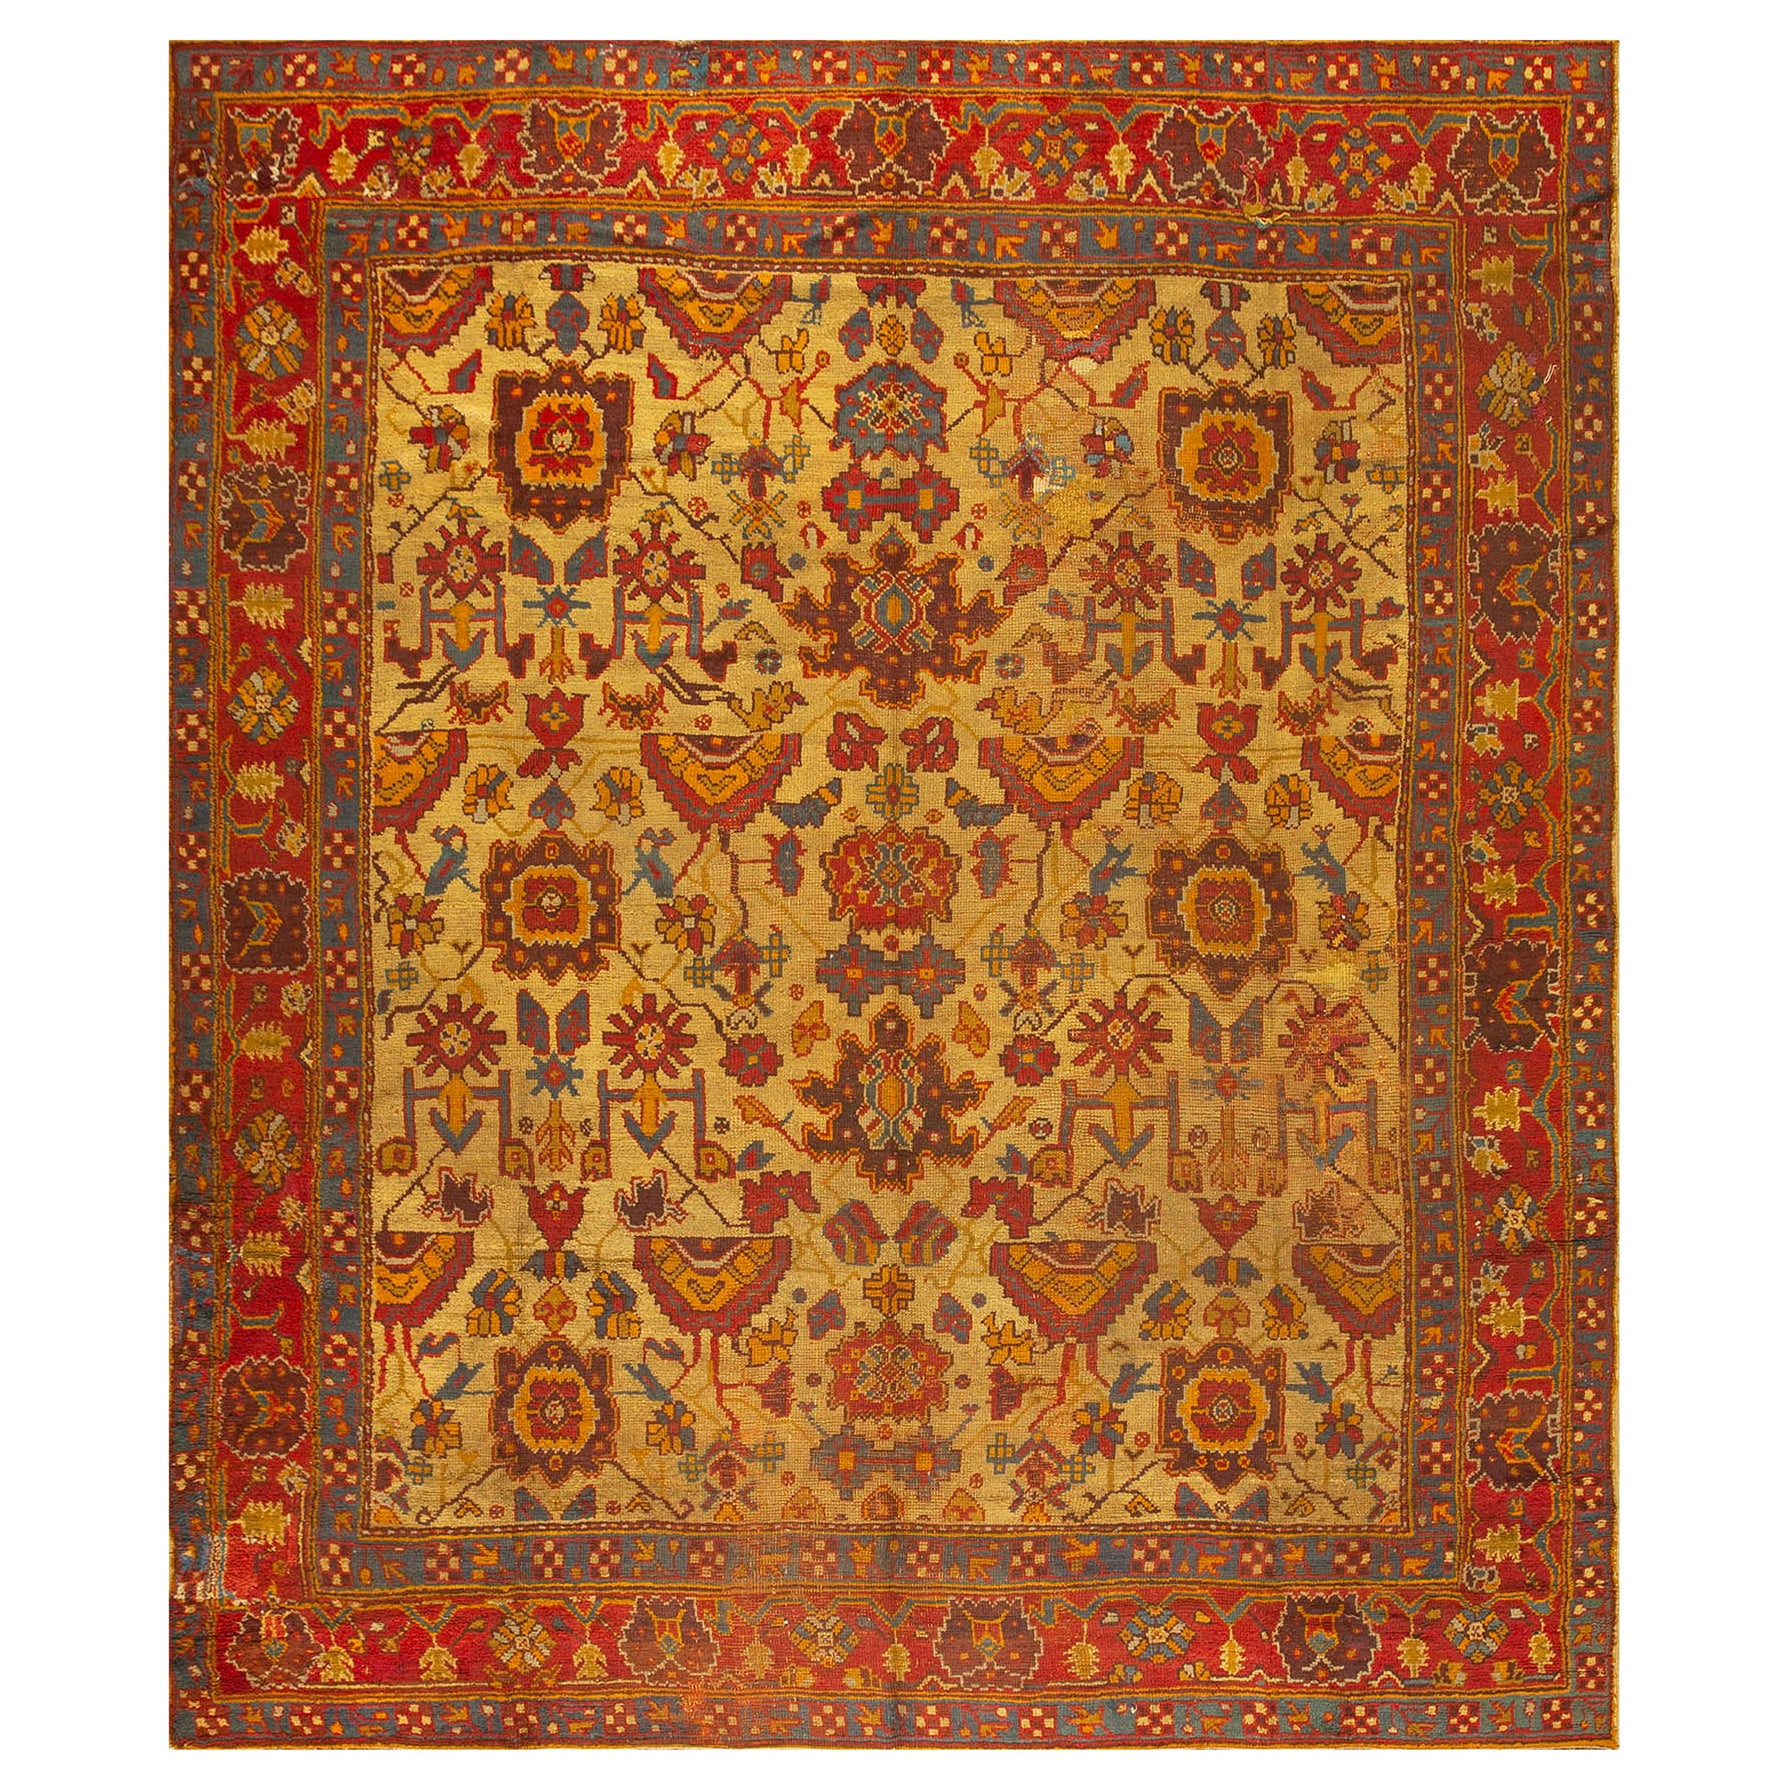 Antique tapis turc d'Oushak 10' 10'' x 12' 8''